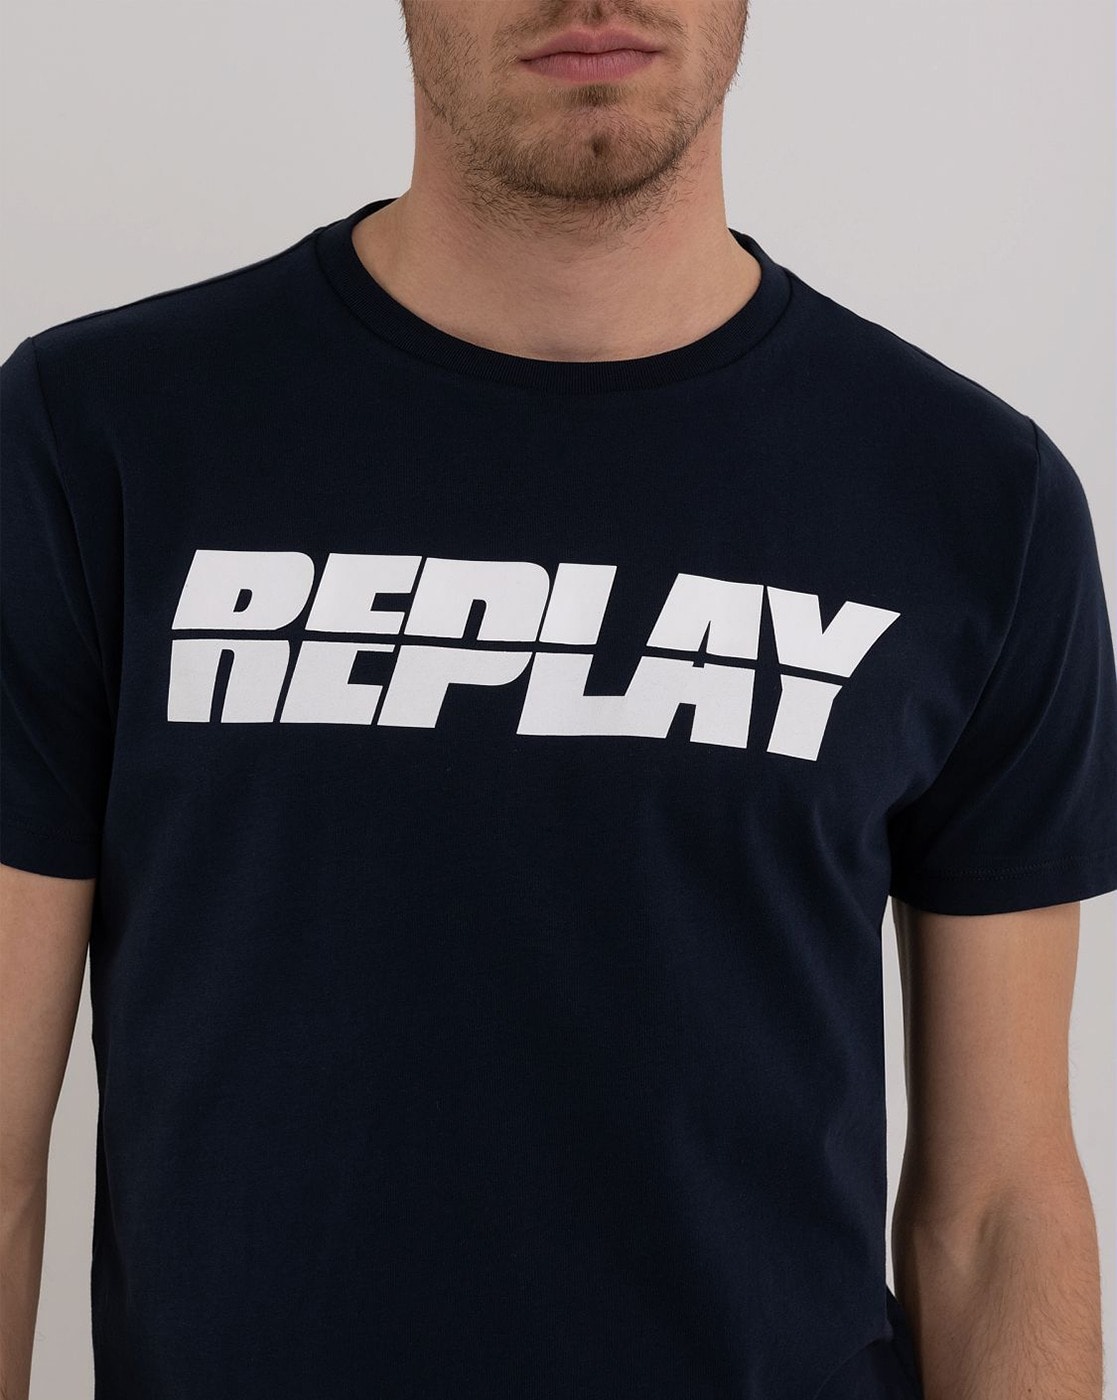 Replay Replay Logo T-Shirt Mens